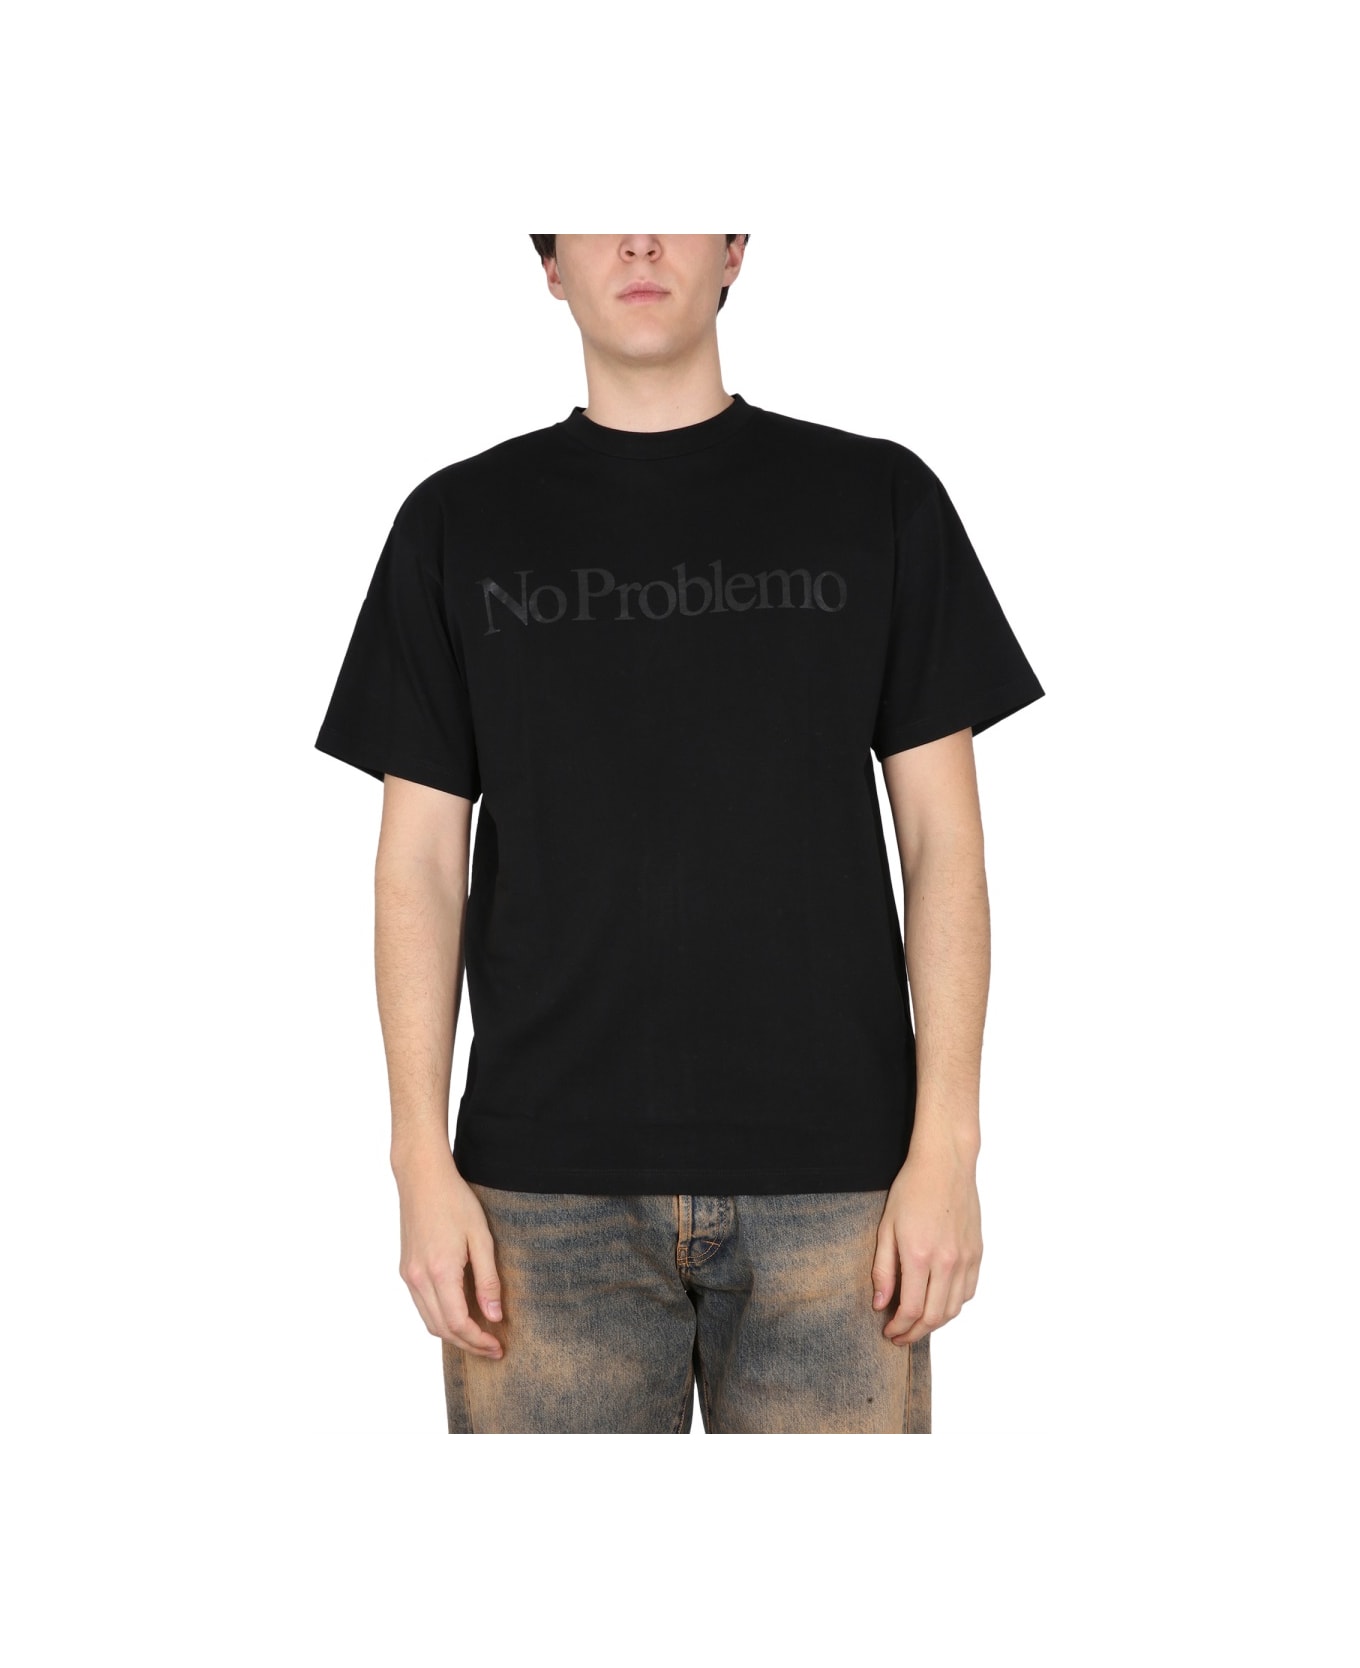 Aries T-shirt No Problemo - BLACK